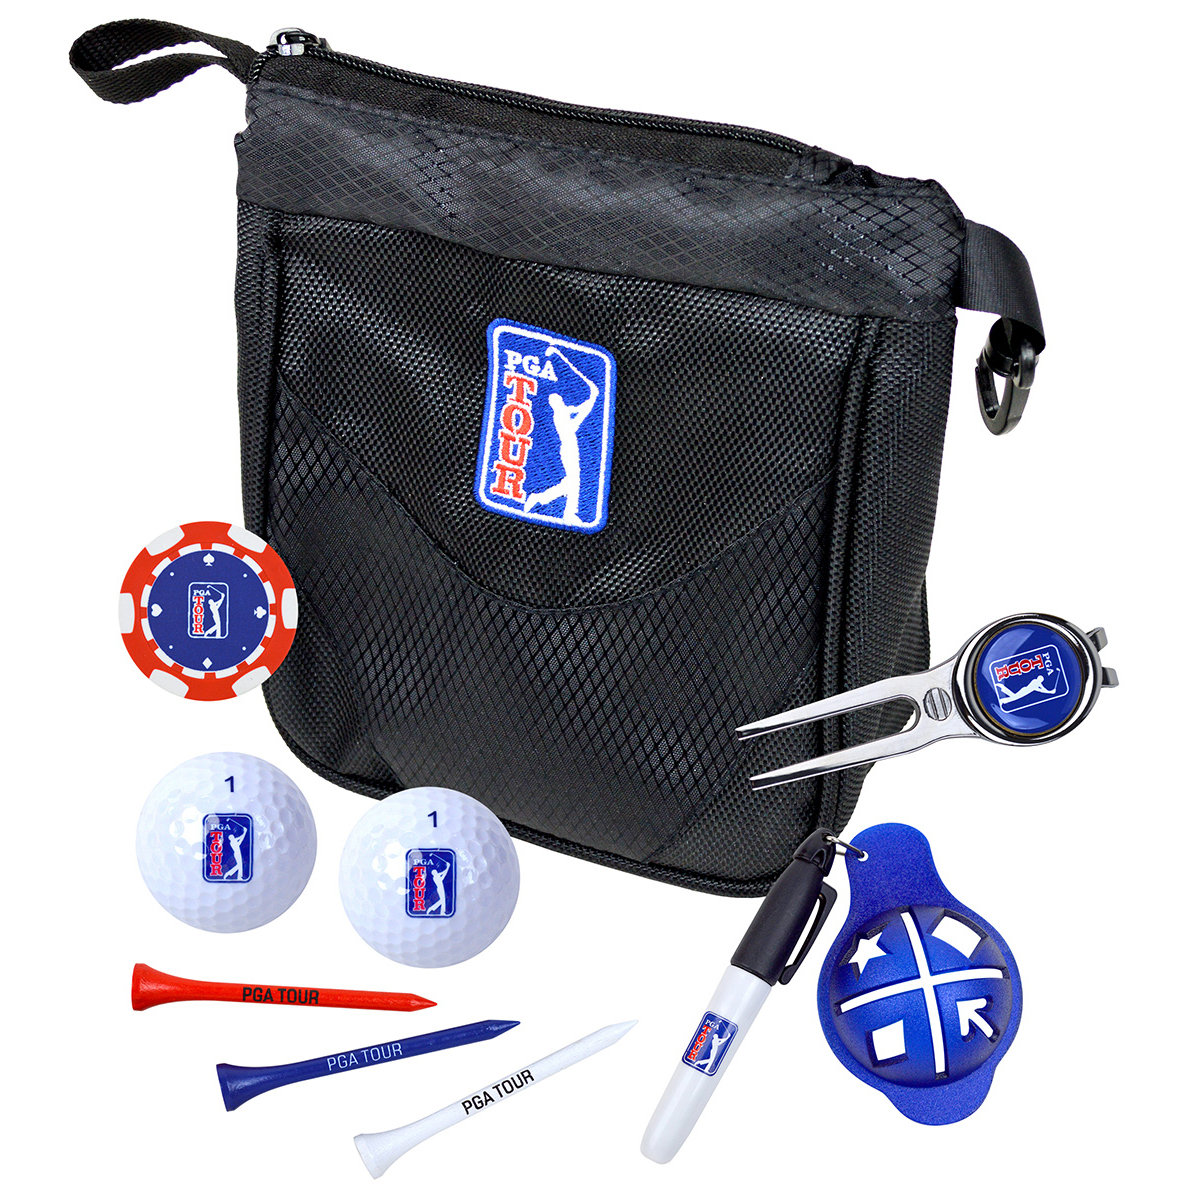 pga tour golf accessories